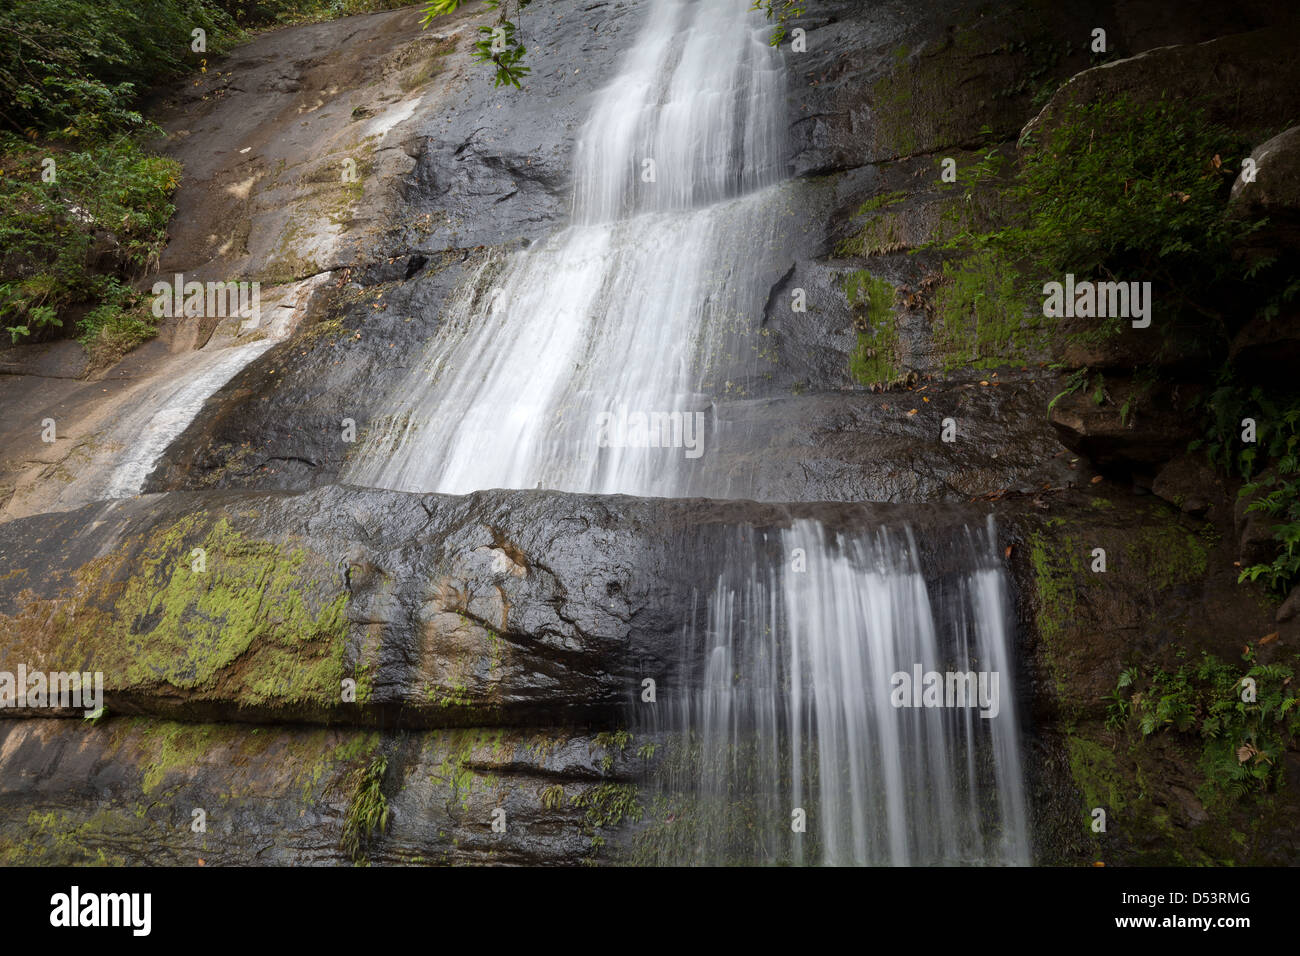 Chorro de los Guabitos Wasserfälle, in der Nähe von Altos de Campana Nationalpark, Panama Provinz, Republik Panama. Stockfoto